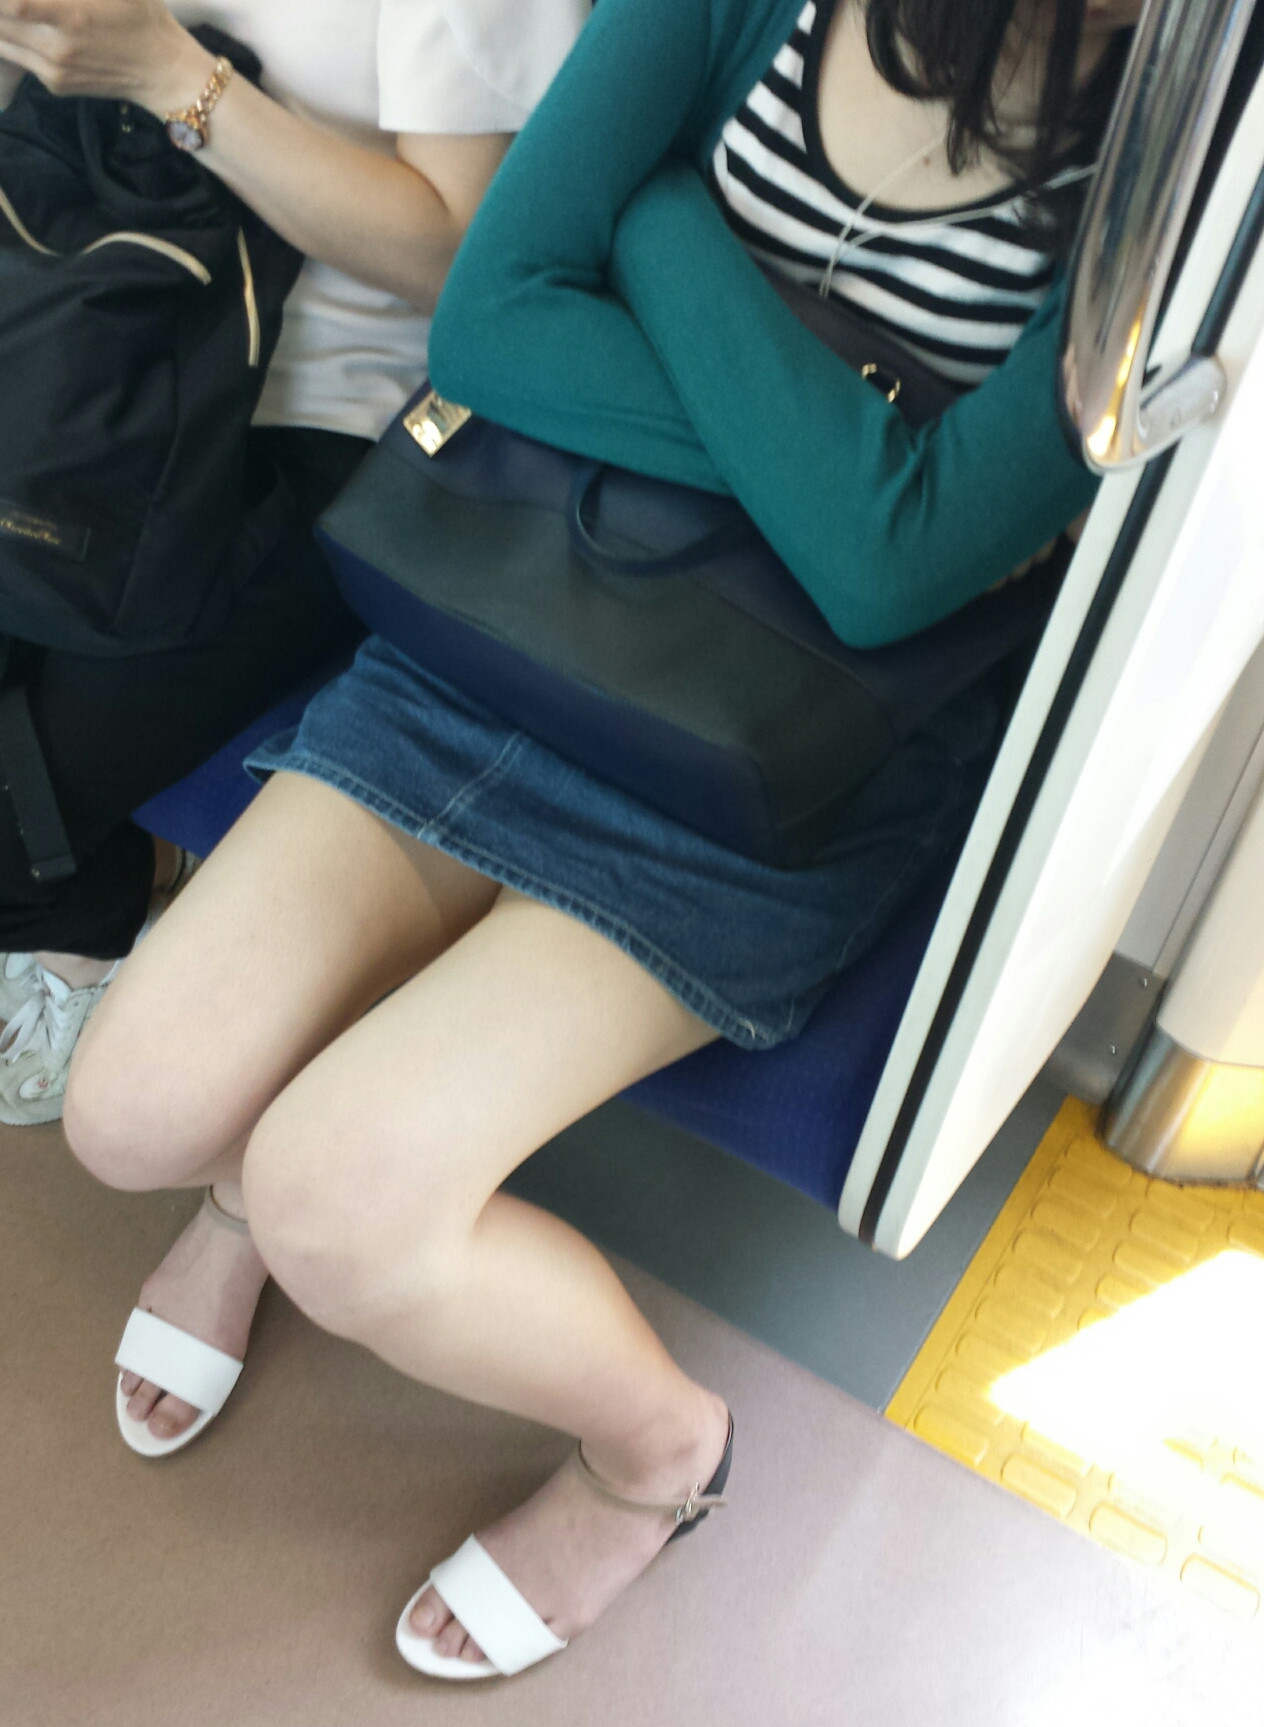 電車内盗撮 : 可愛子ちゃんたちの太ももエロ画像！ (47枚)008